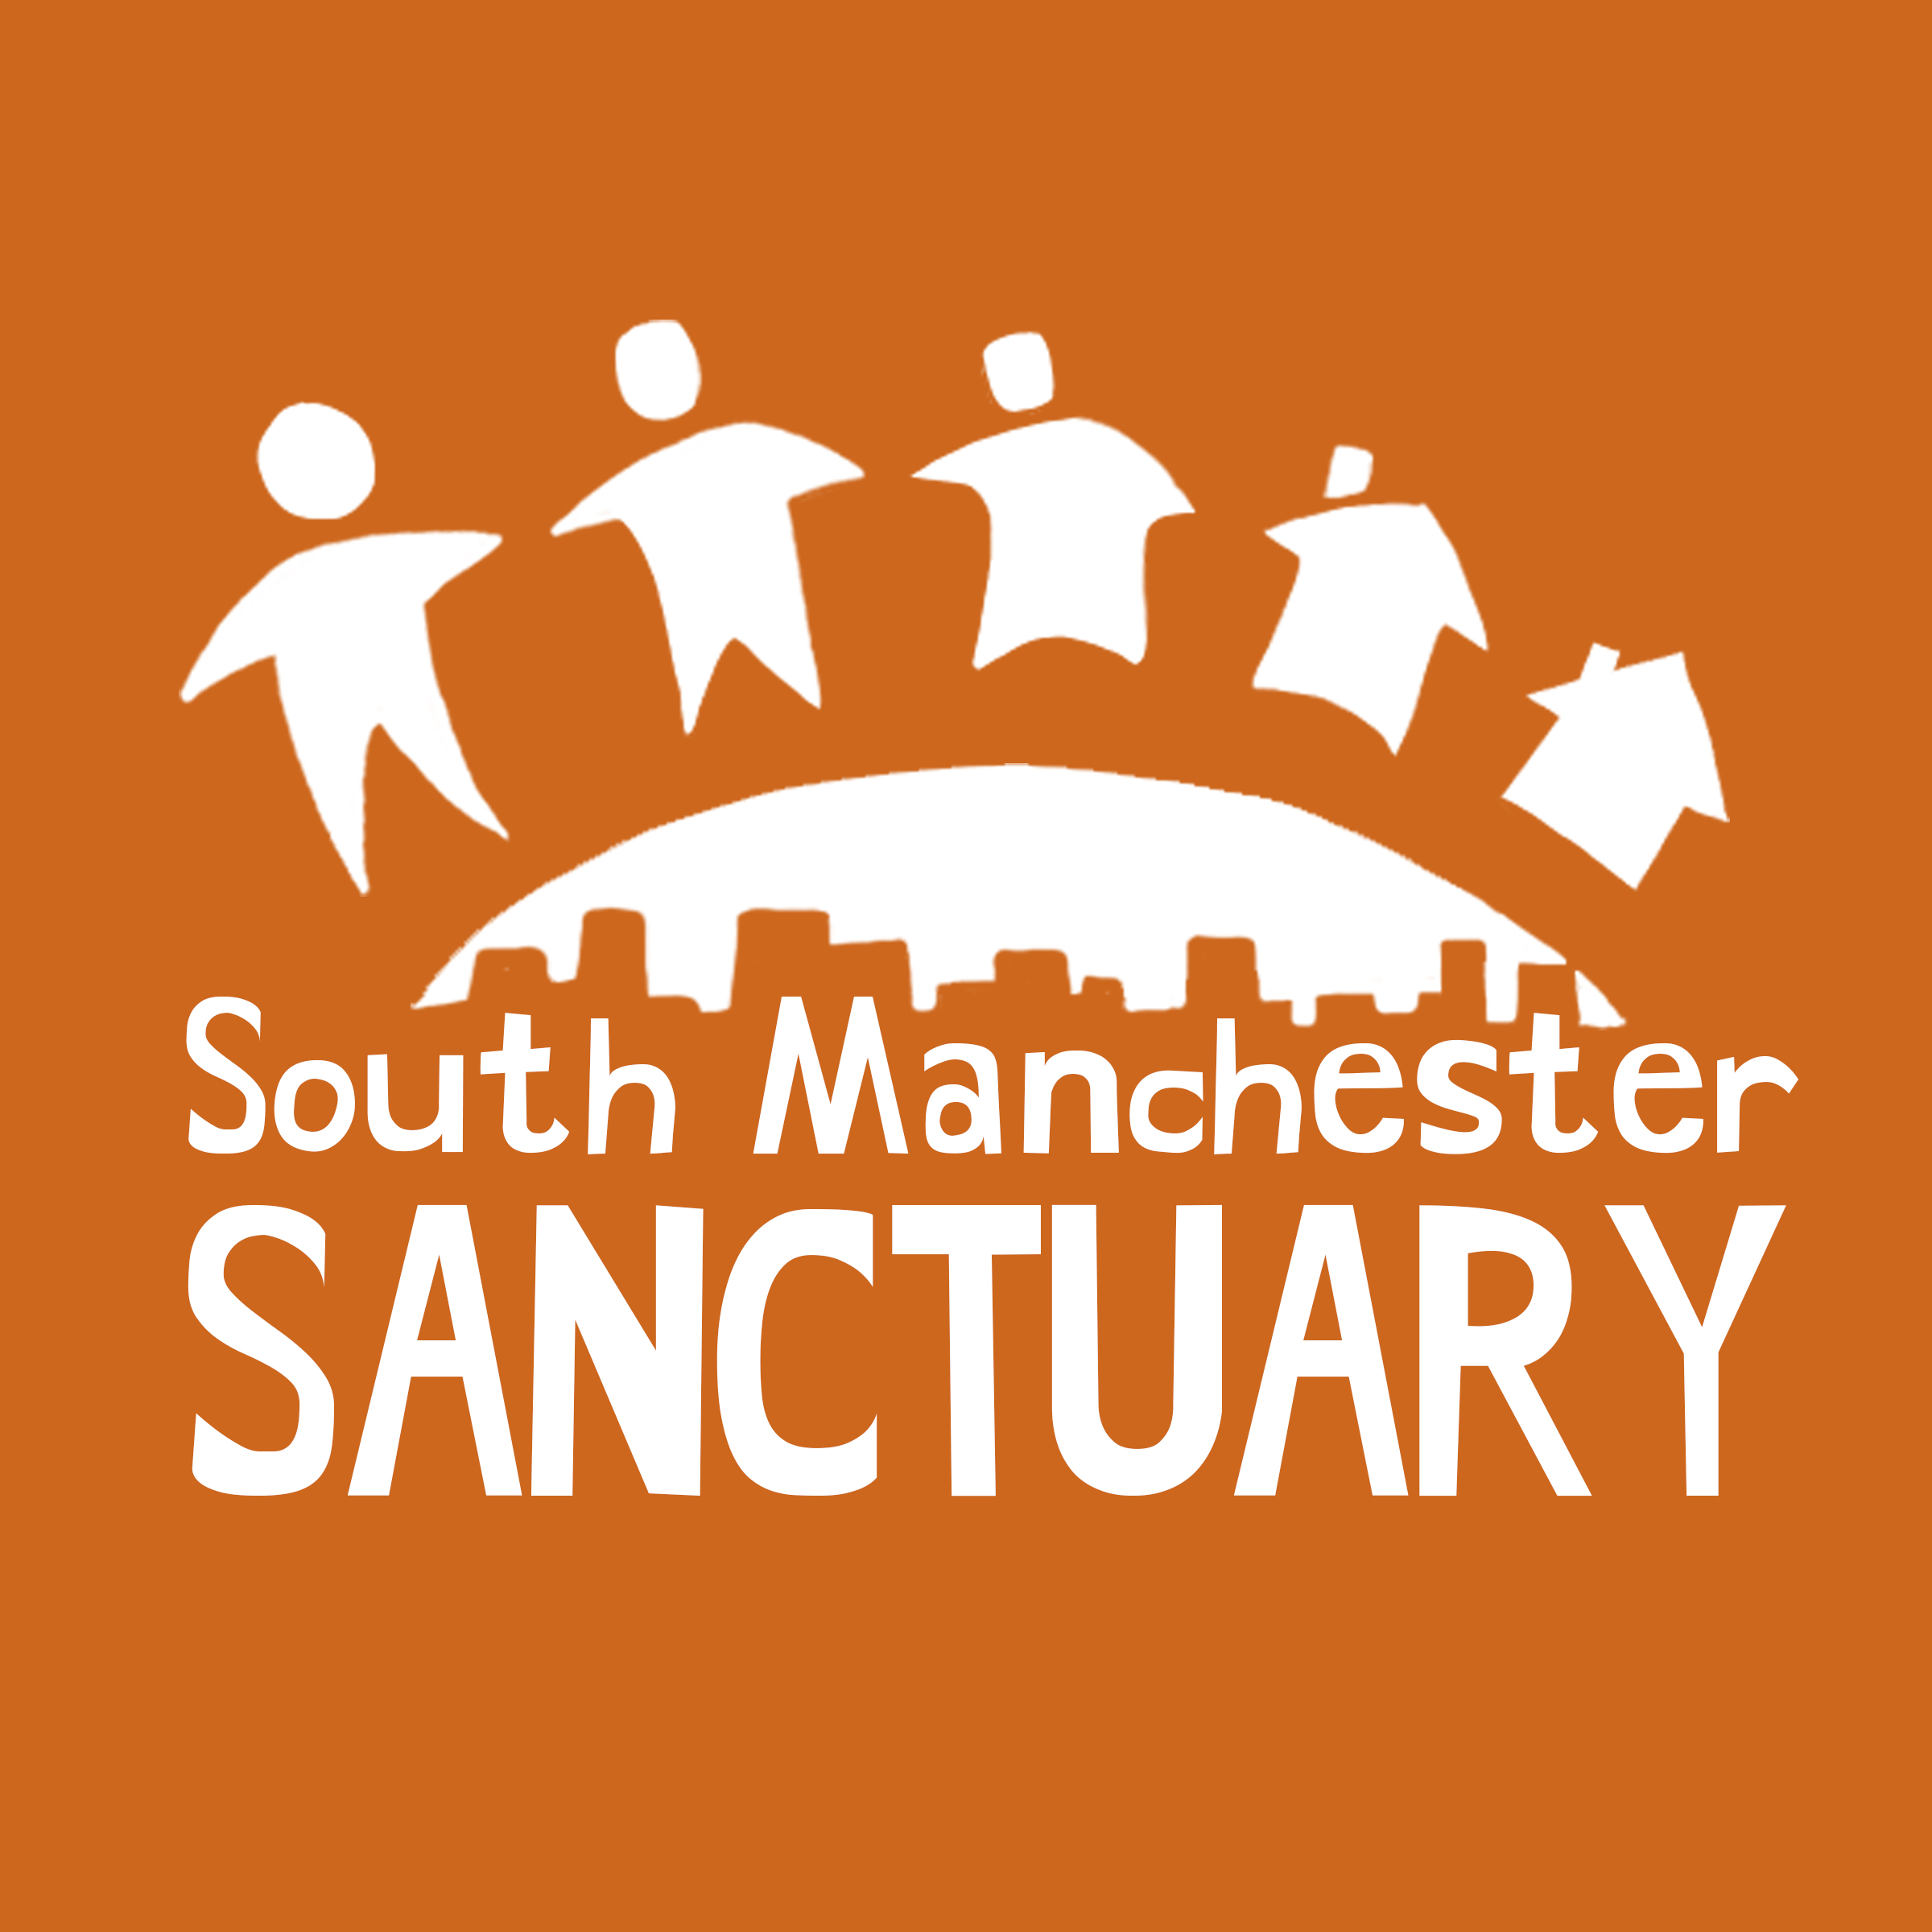 South Manchester Sanctuary